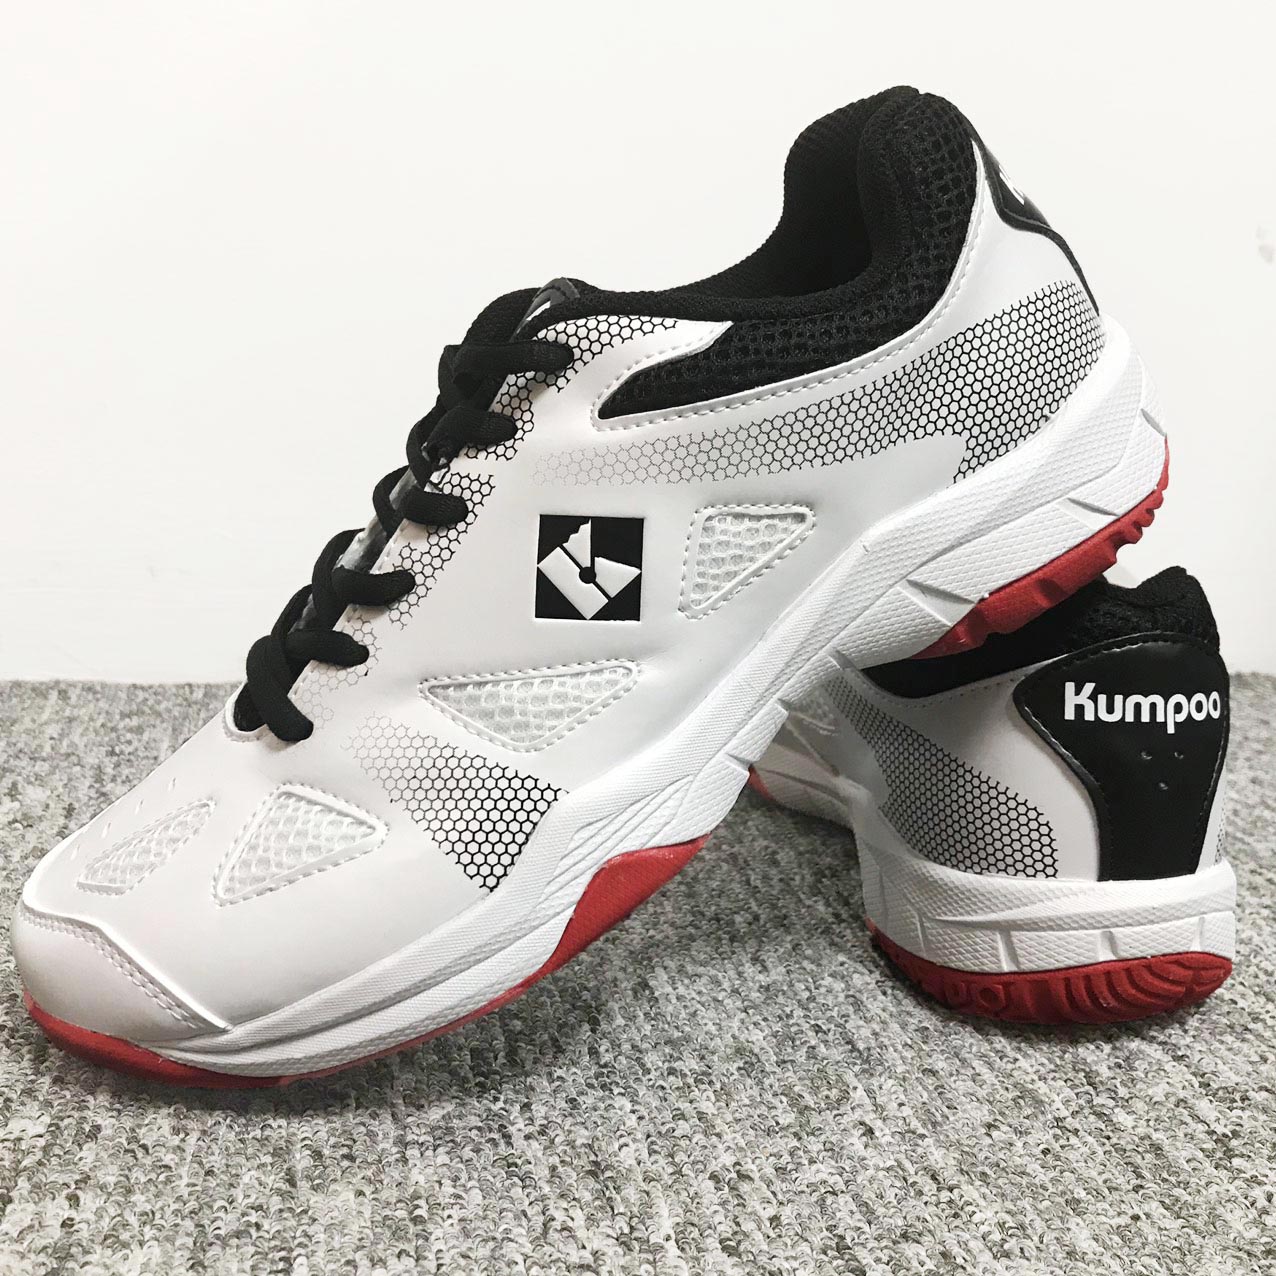 Giày bóng chuyền, cầu lông Kumpoo KH-E23 mẫu mới dành cho nam và nữ đủ size màu trắng phối đỏ đen